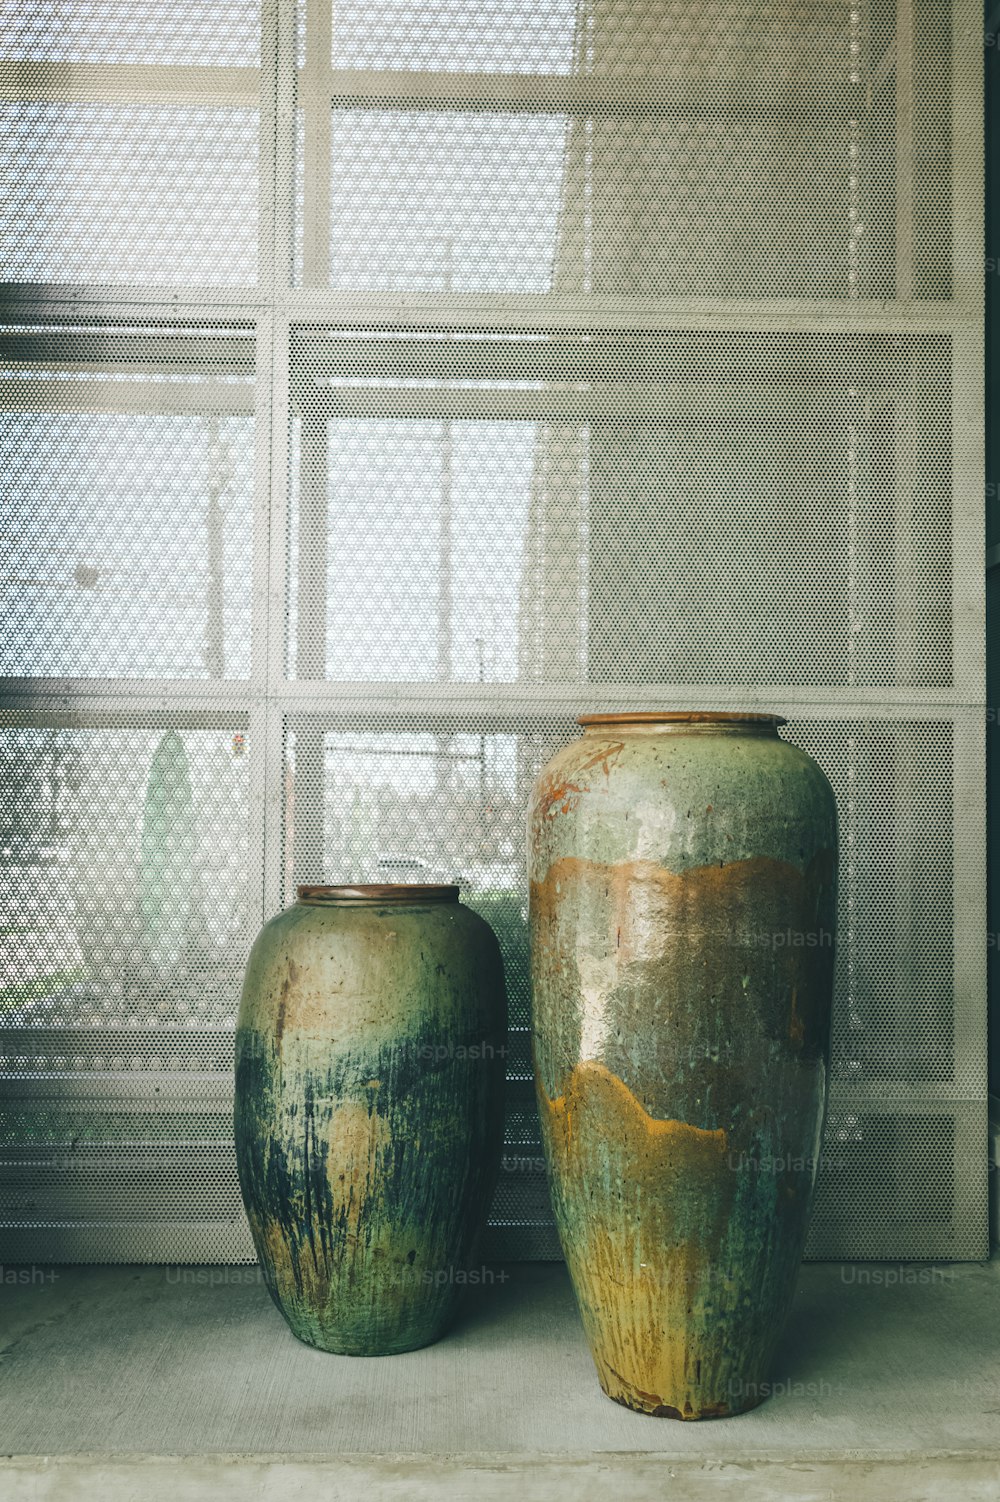 Due vasi verdi seduti uno accanto all'altro davanti a una finestra